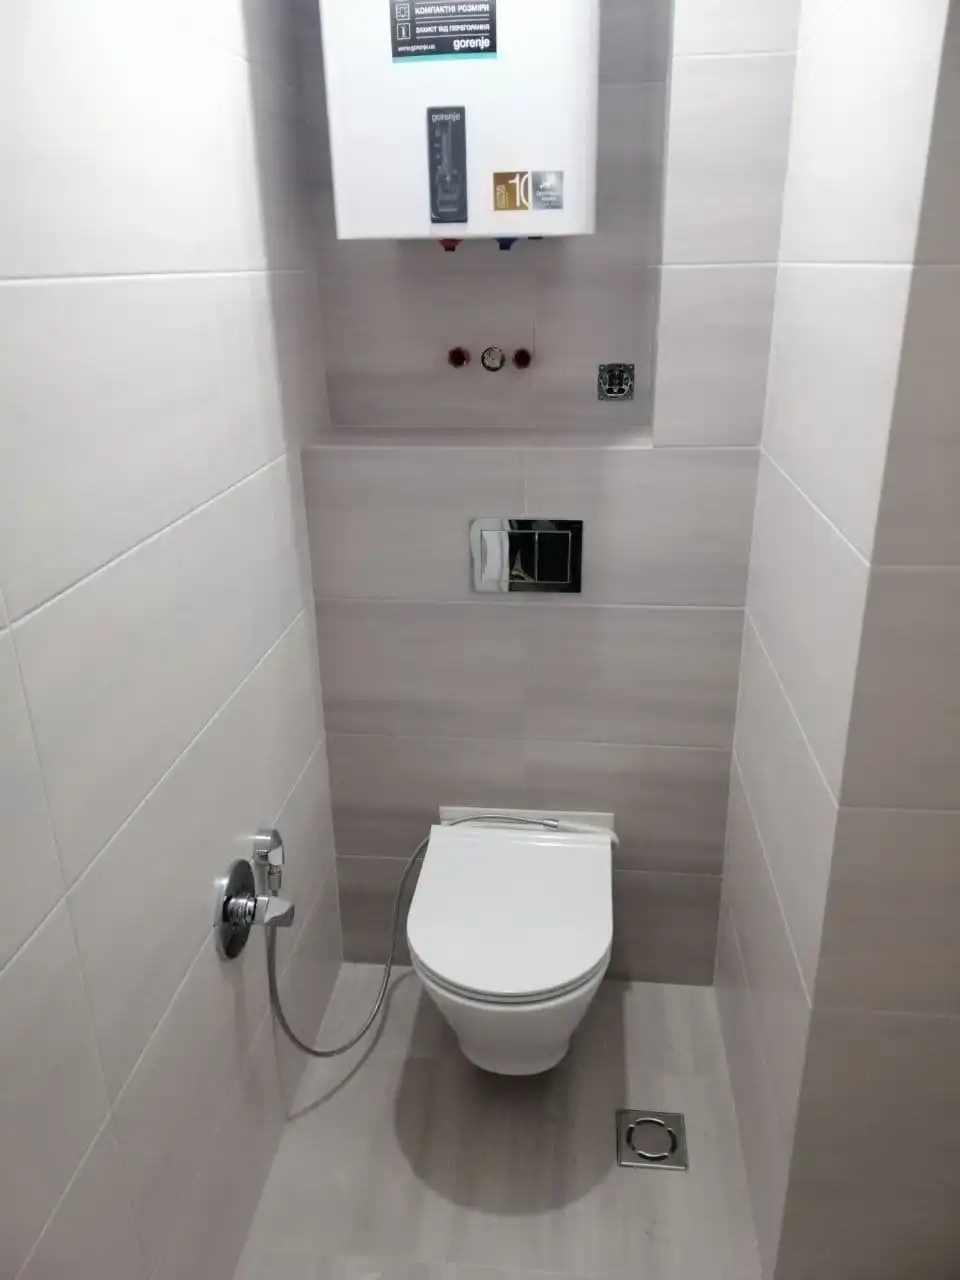 Instalace, demontáž, montáž WC v Praze a okoli	výměna wc